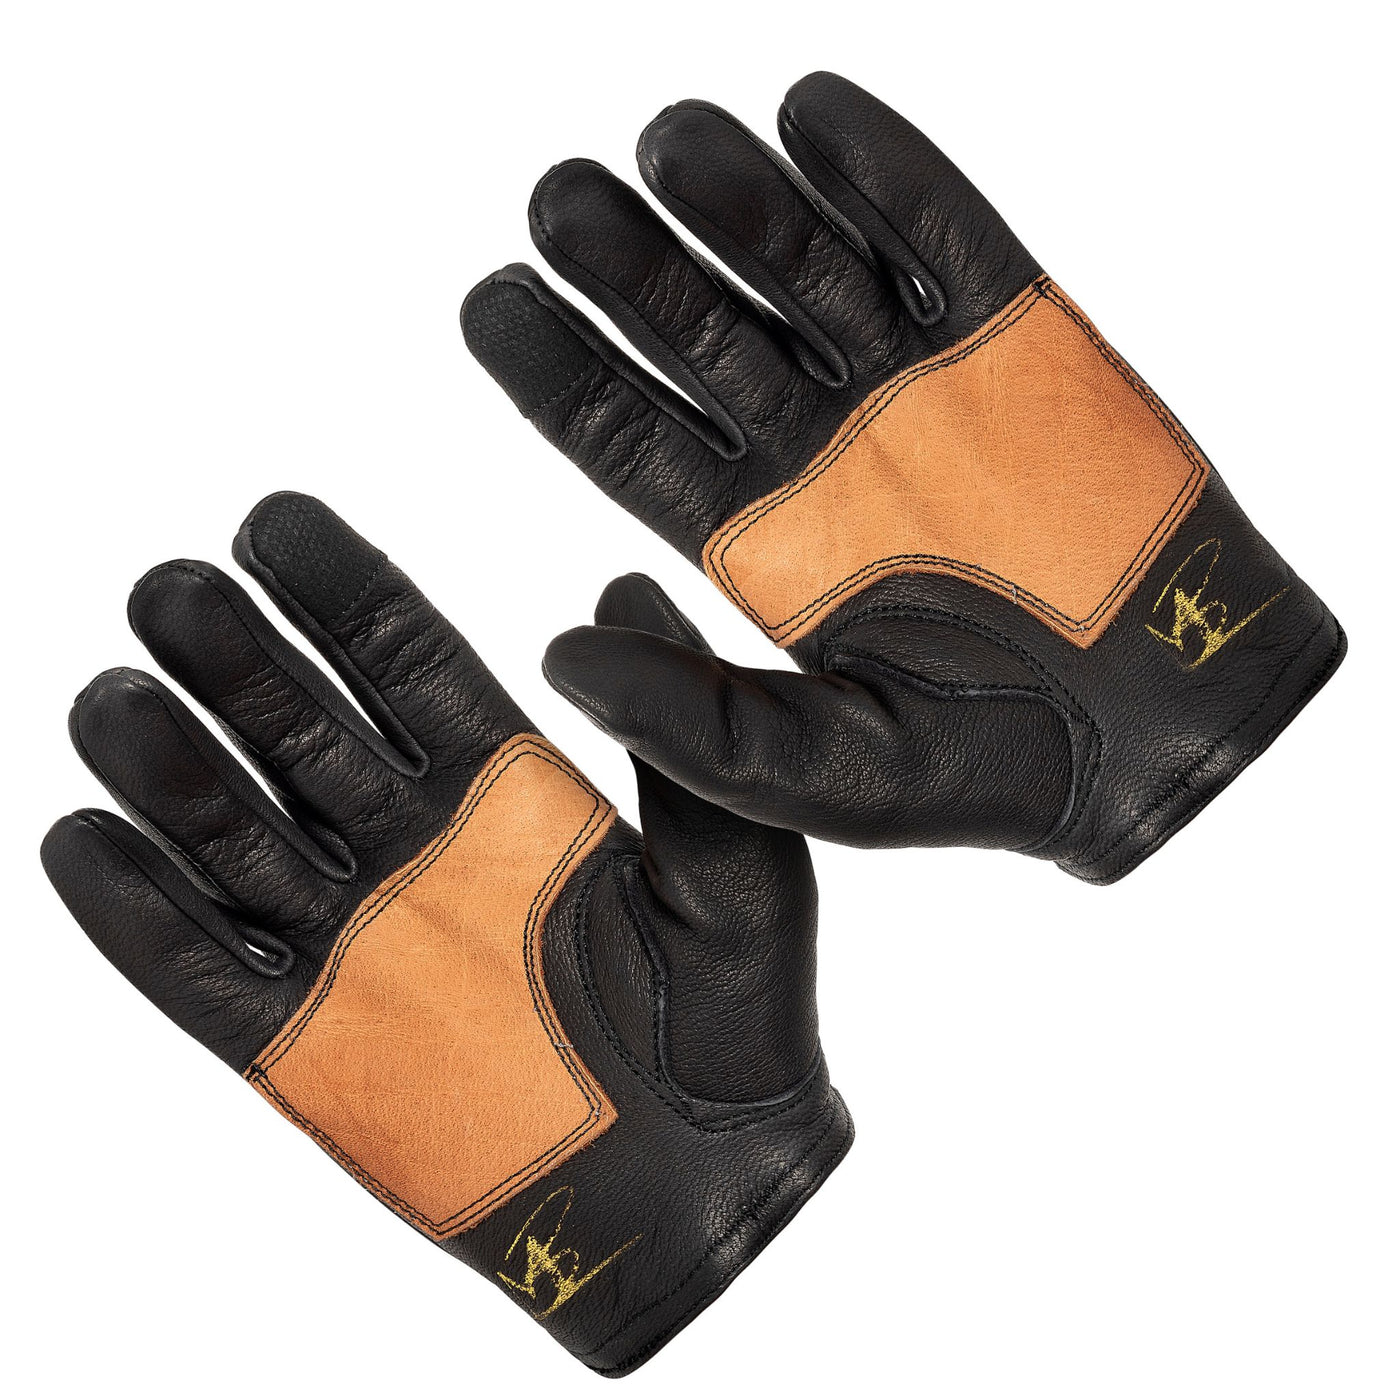 Dipped Deer Leather Glove: Easy Rider Motorcycle: Black/Brown